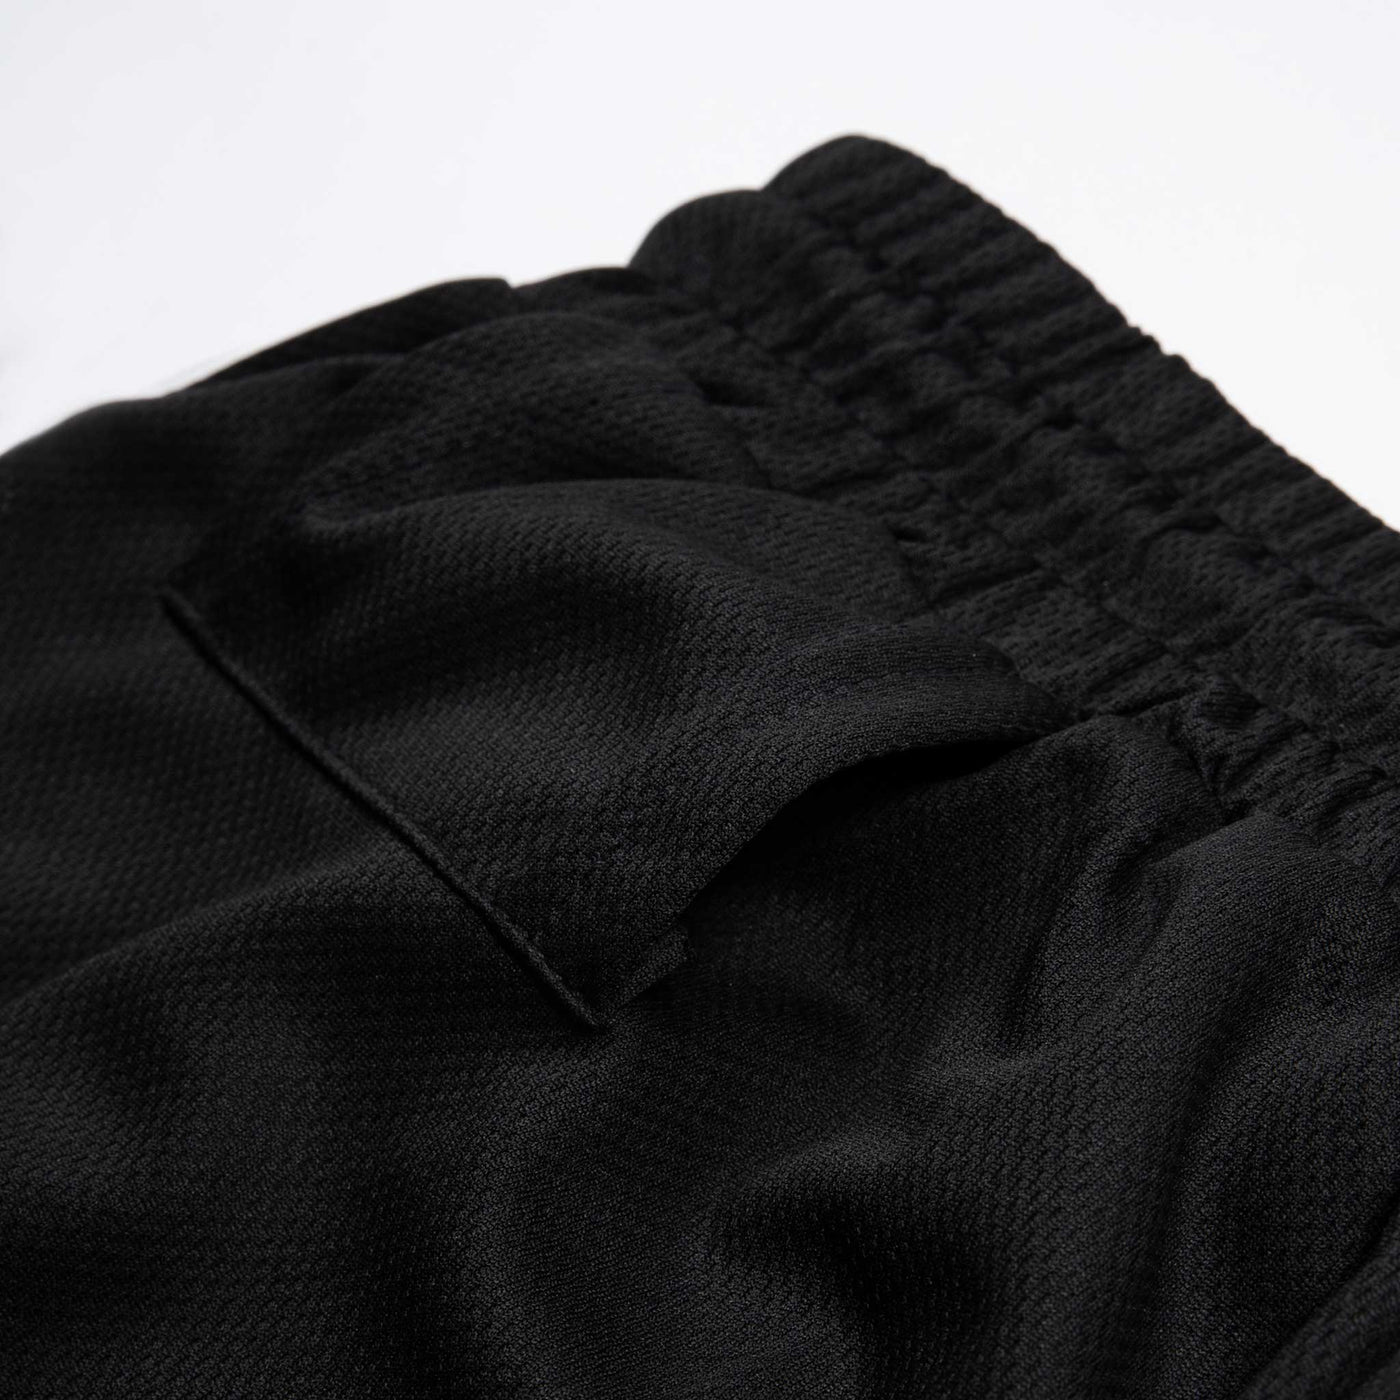 0019. Training Shorts (with anti-friction lining) - Black